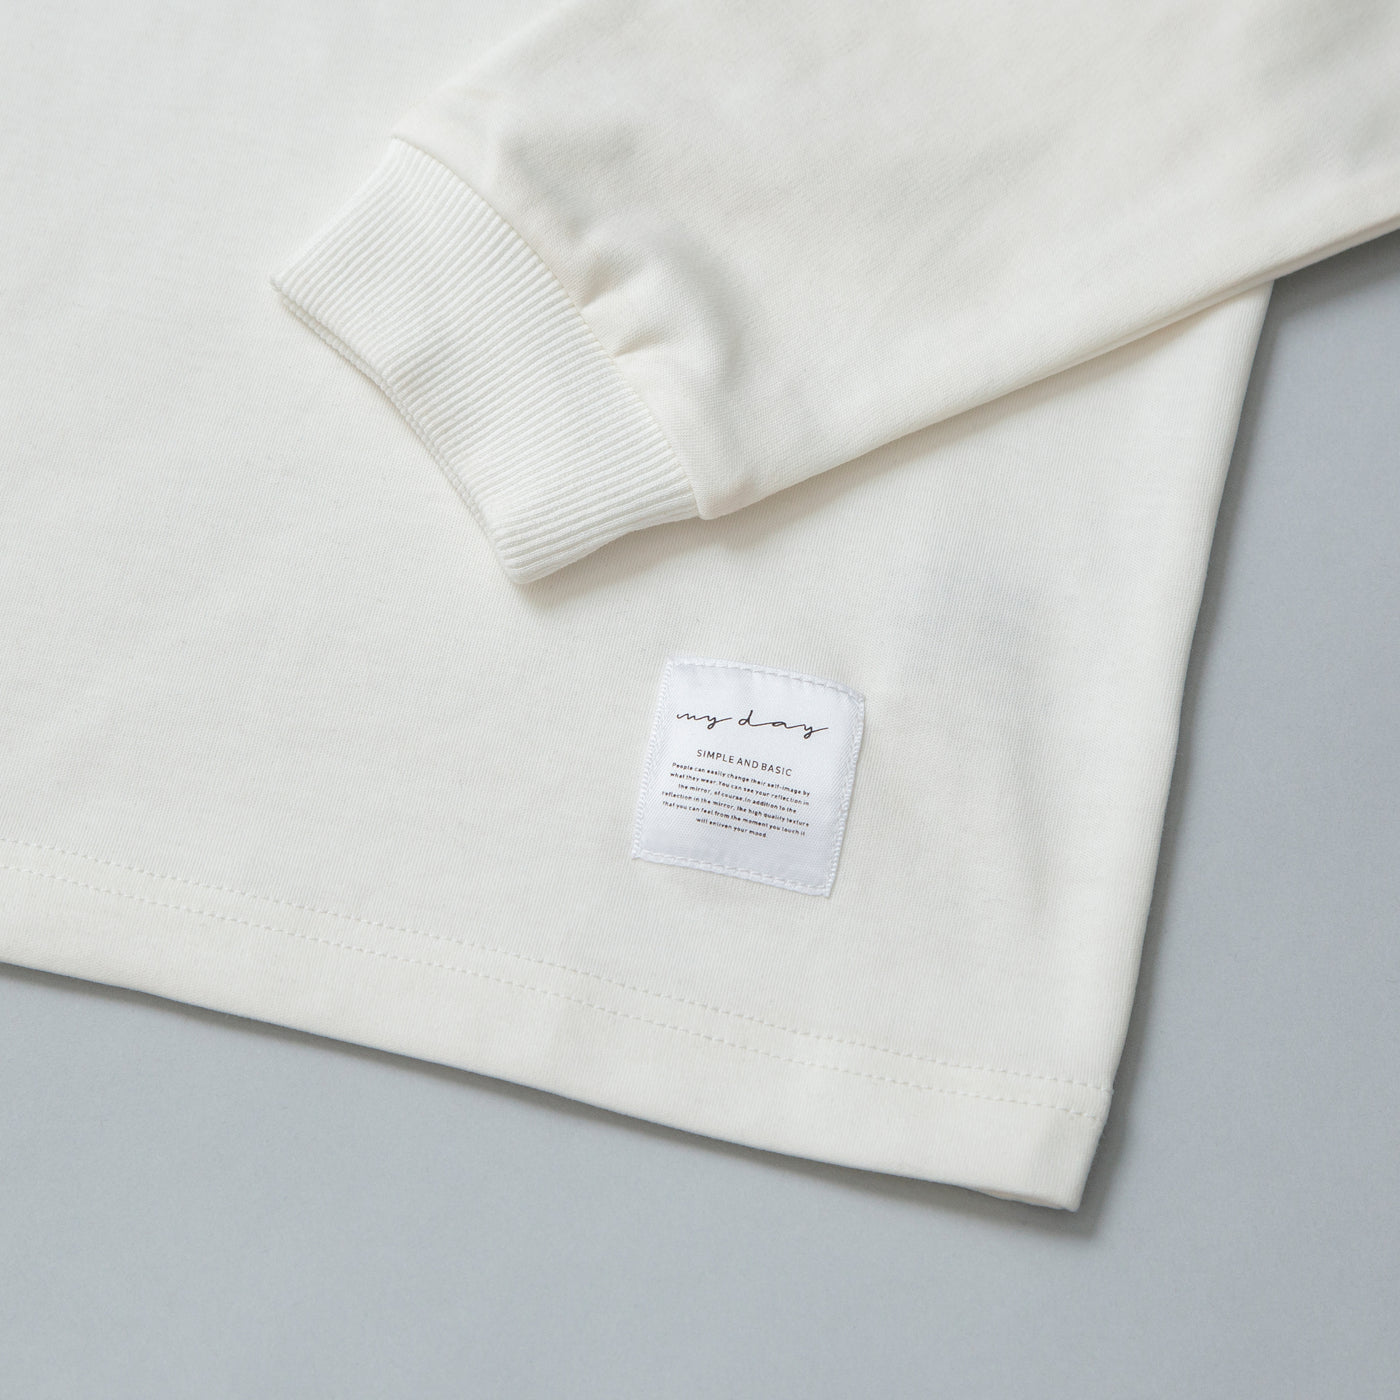 2022 Cotton Plain Long T-shirts